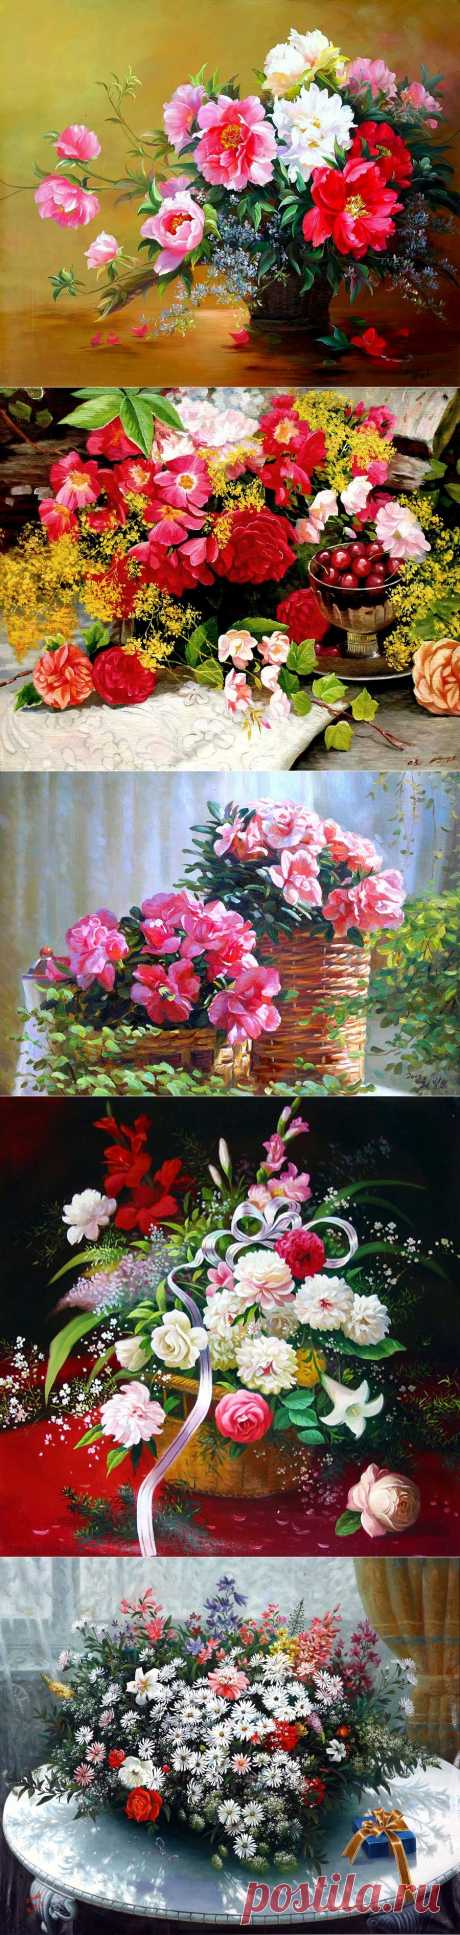 Цветы и натюрморты в живописи корейских художников | РОЗЫ